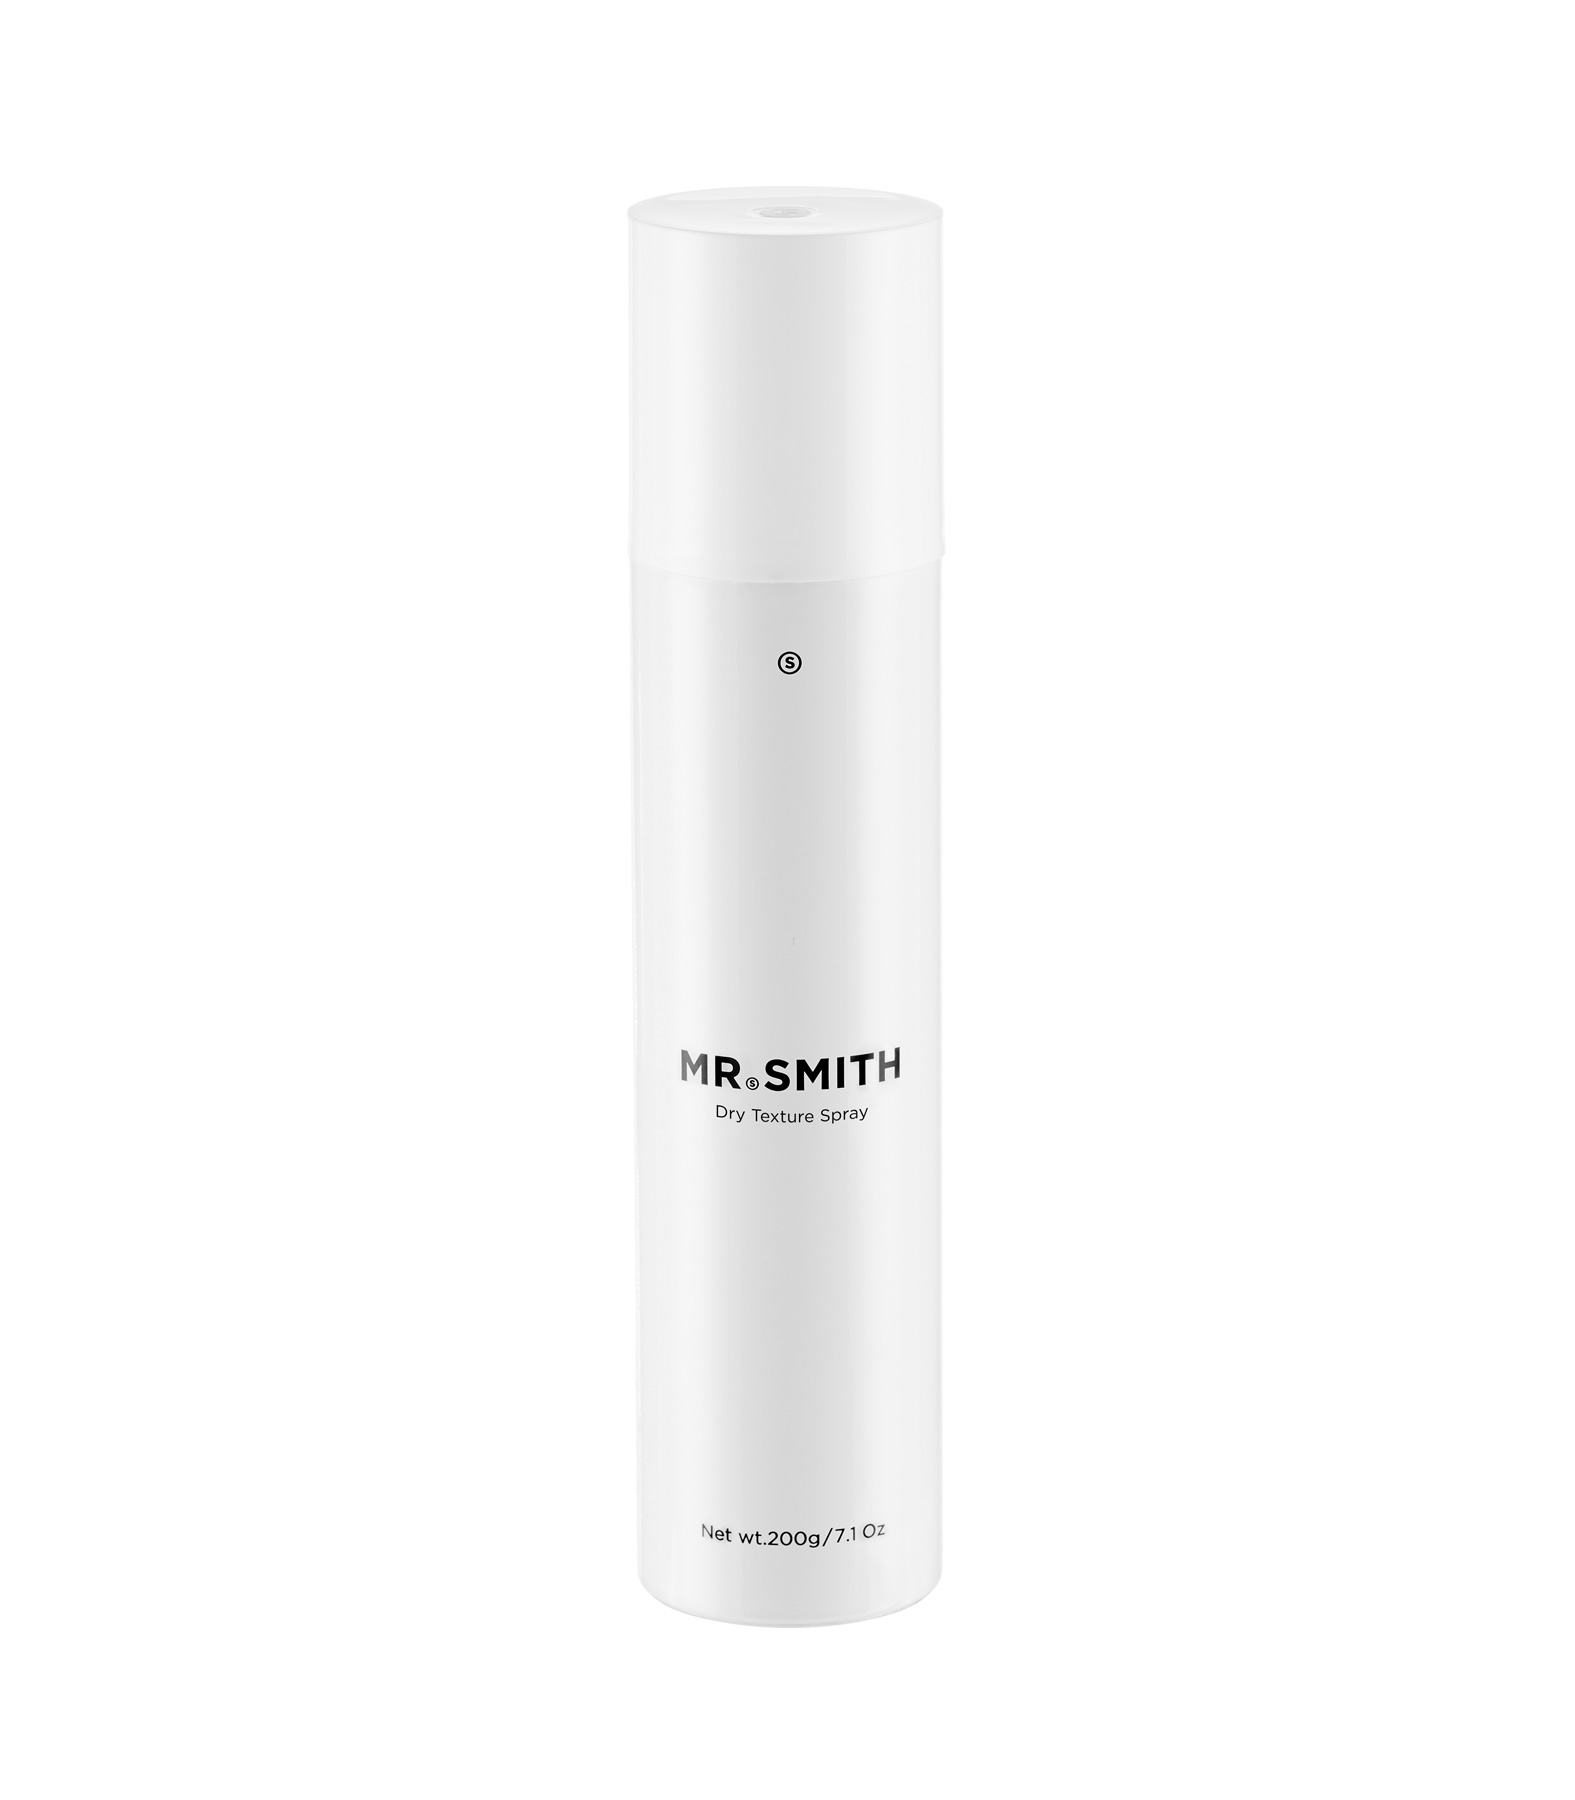 Mr. Smith Dry Texture Spray 200gr 1